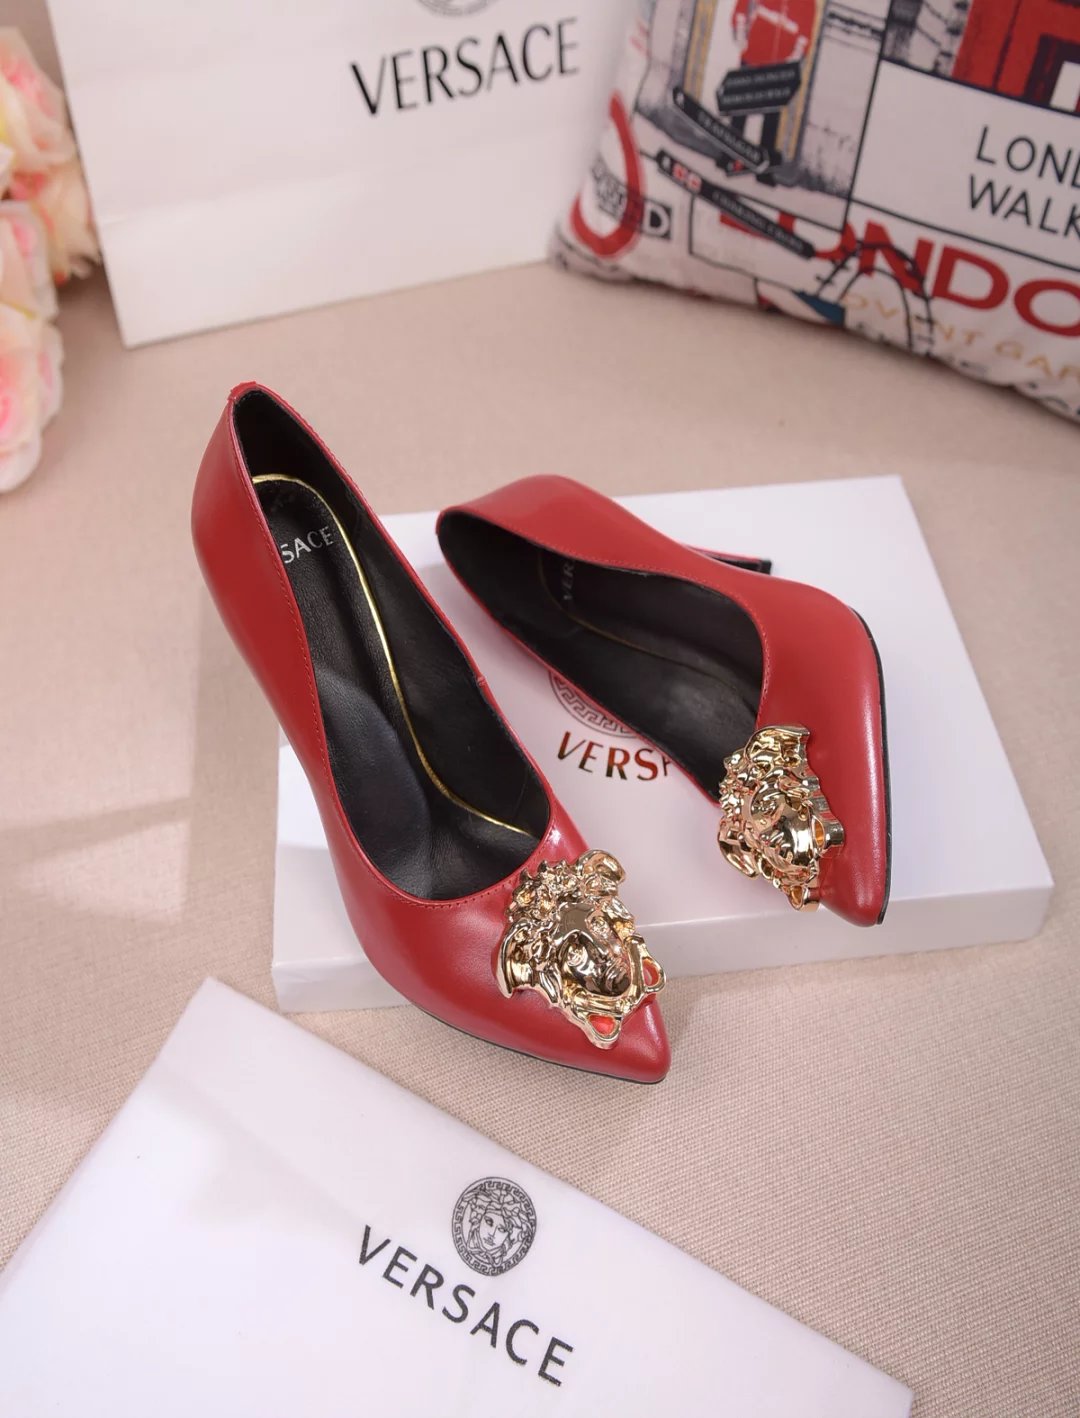 men - Versace women heels - red bottoms 